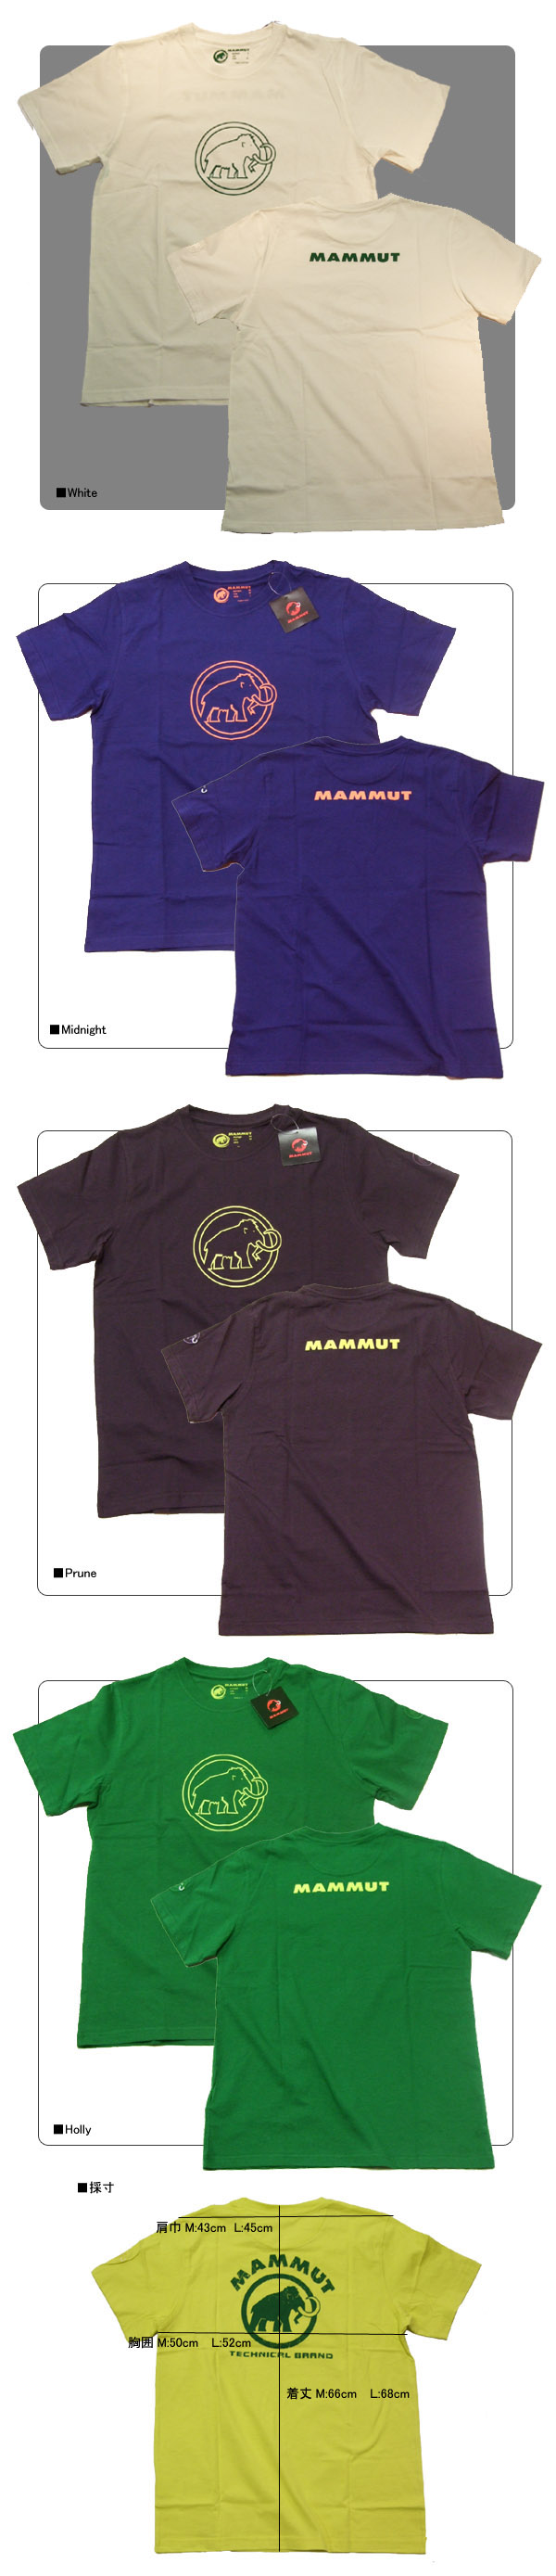 Mammut マムート 速乾tシャツ Promo Tシャツ 登山とアウトドア アウトスポット